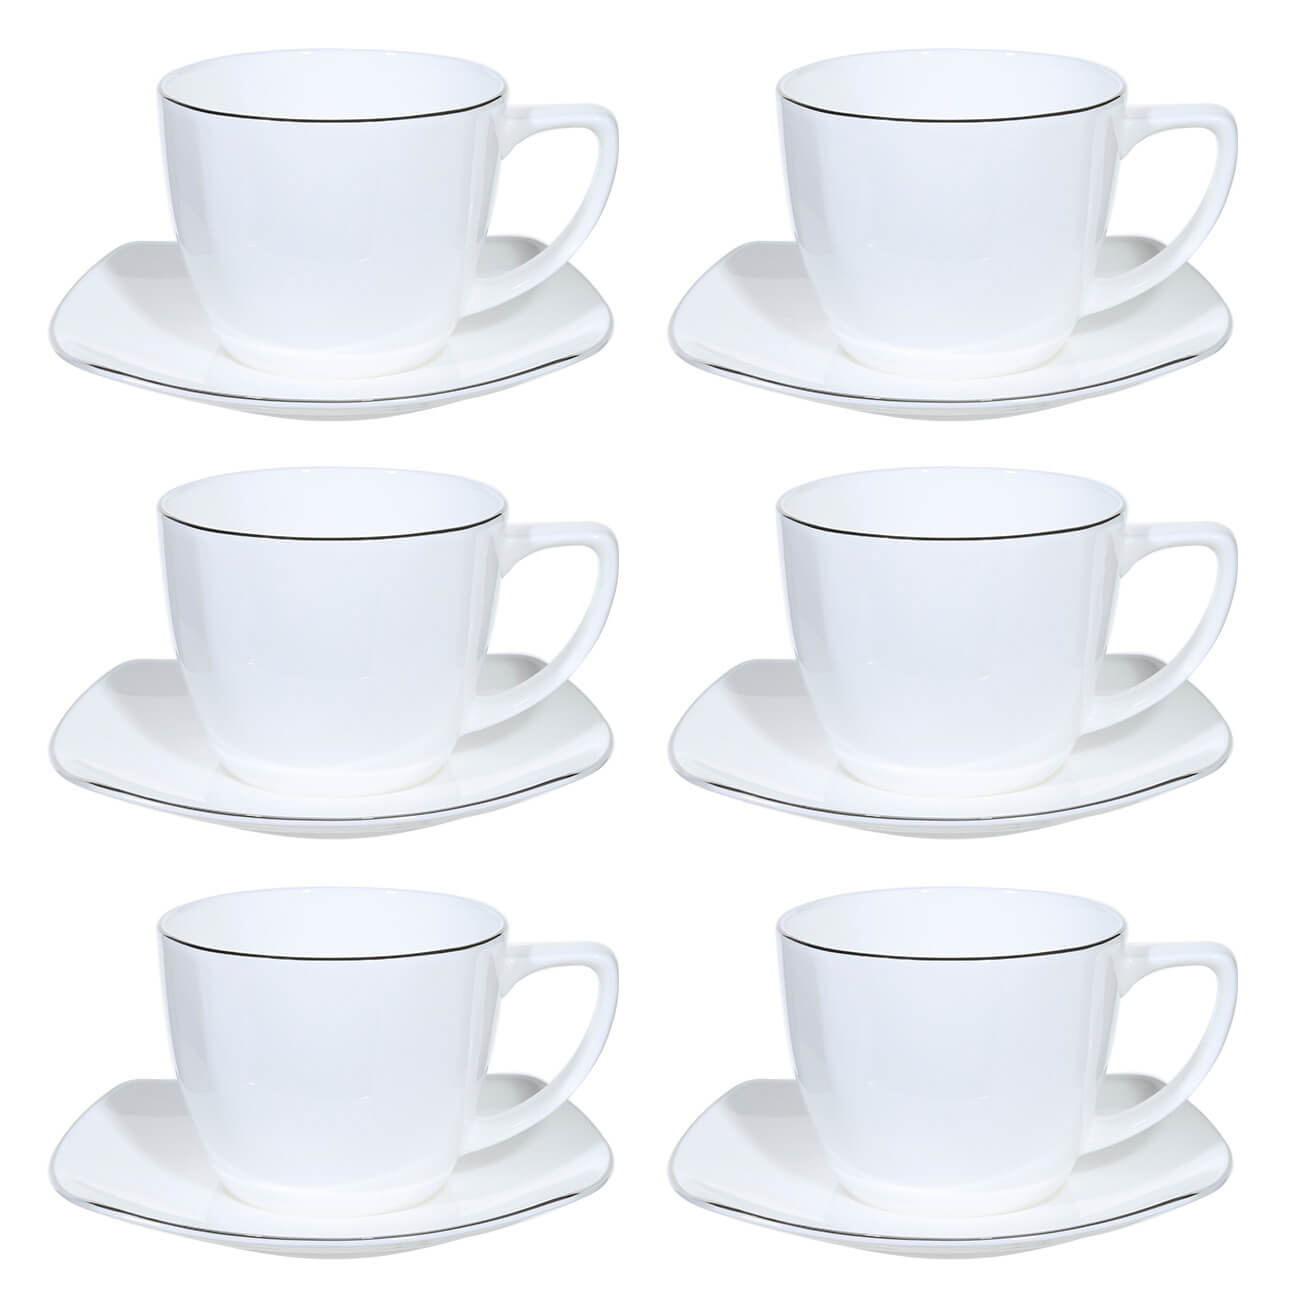 Пара чайная, 6 перс, 12 пр, 240 мл, фарфор F, Iceberg пара чайная 6 перс 12 пр 250 мл фарфор f antarctica